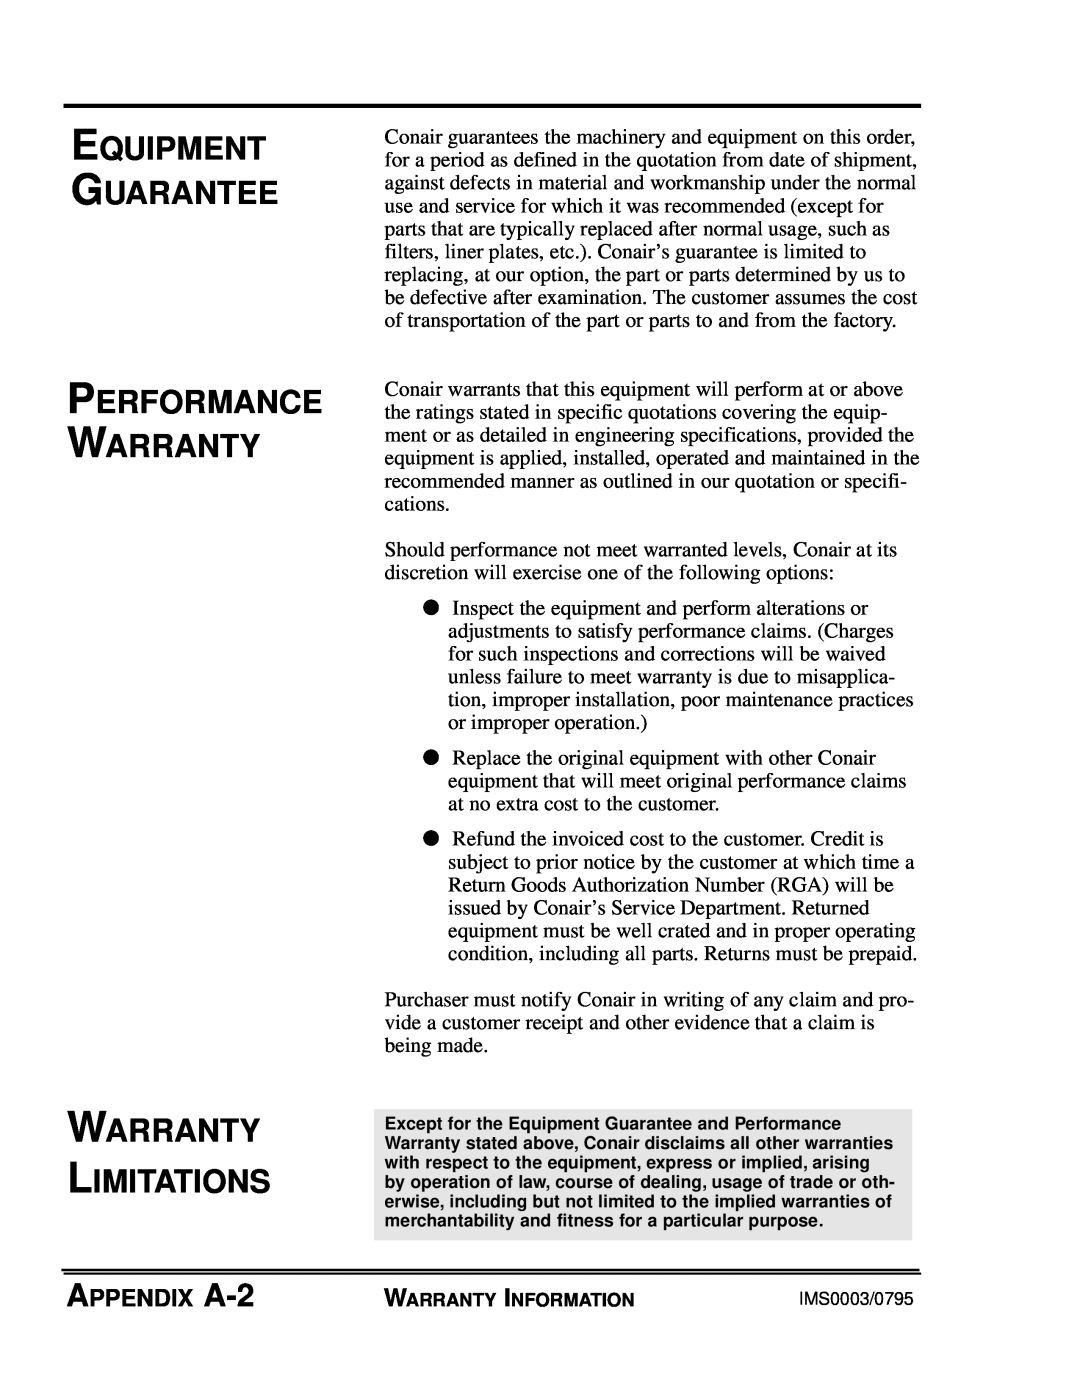 Conair GB, WSB manual Equipment Guarantee Performance Warranty, Warranty Limitations, APPENDIX A-2 